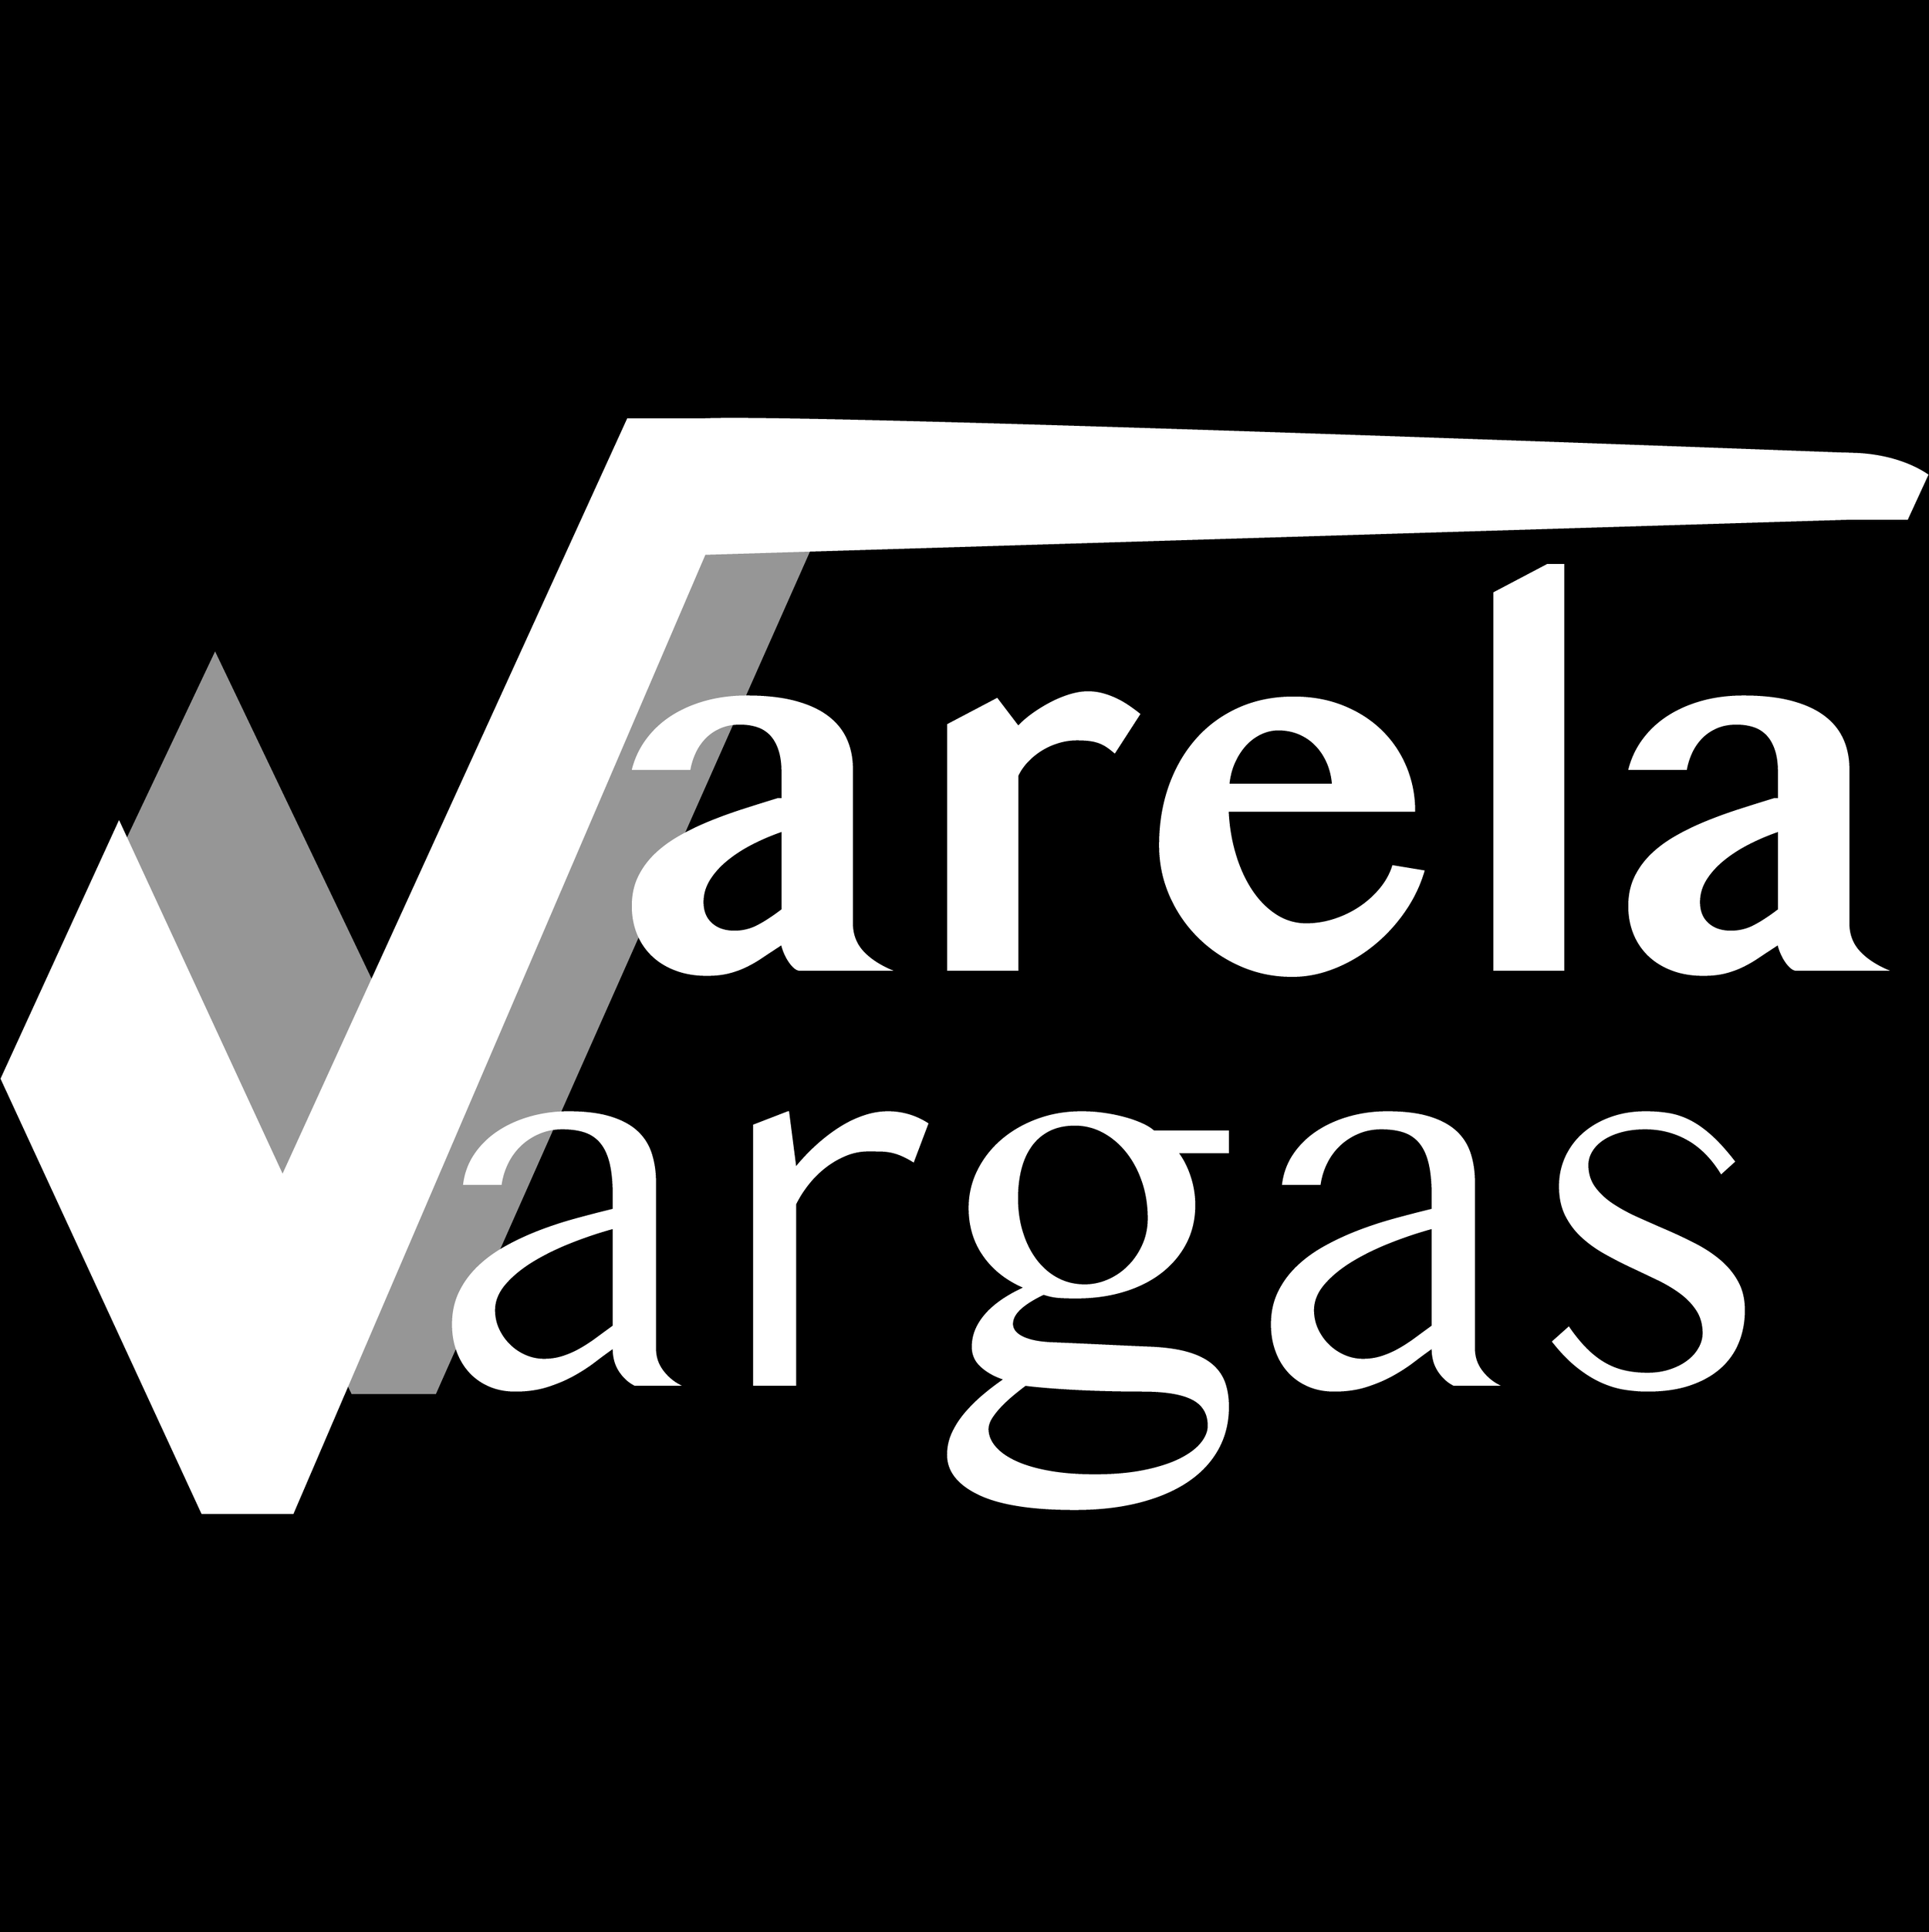 Varela Vargas